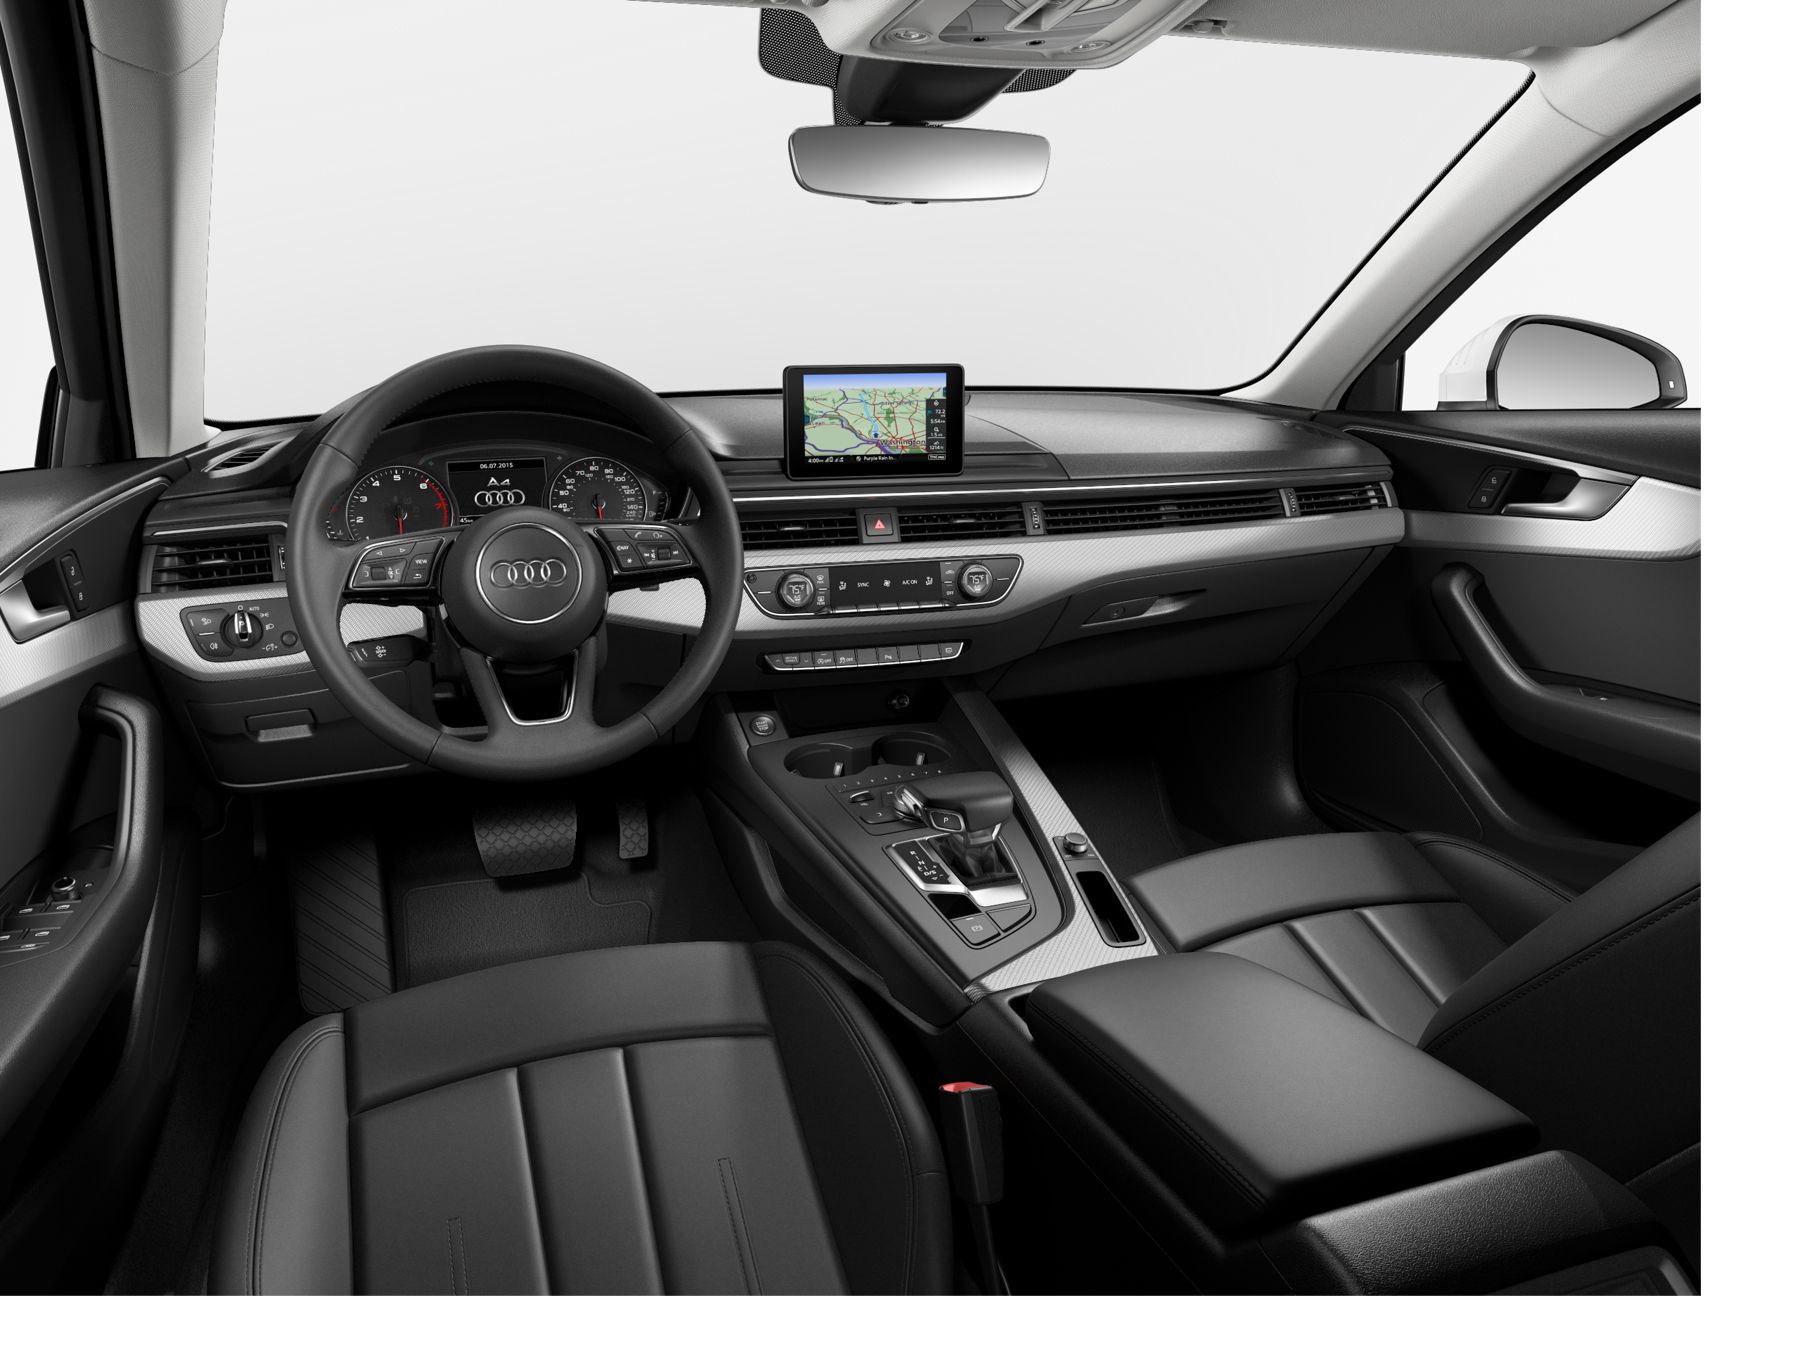 Audi A4 Prestige 2017 interior front view